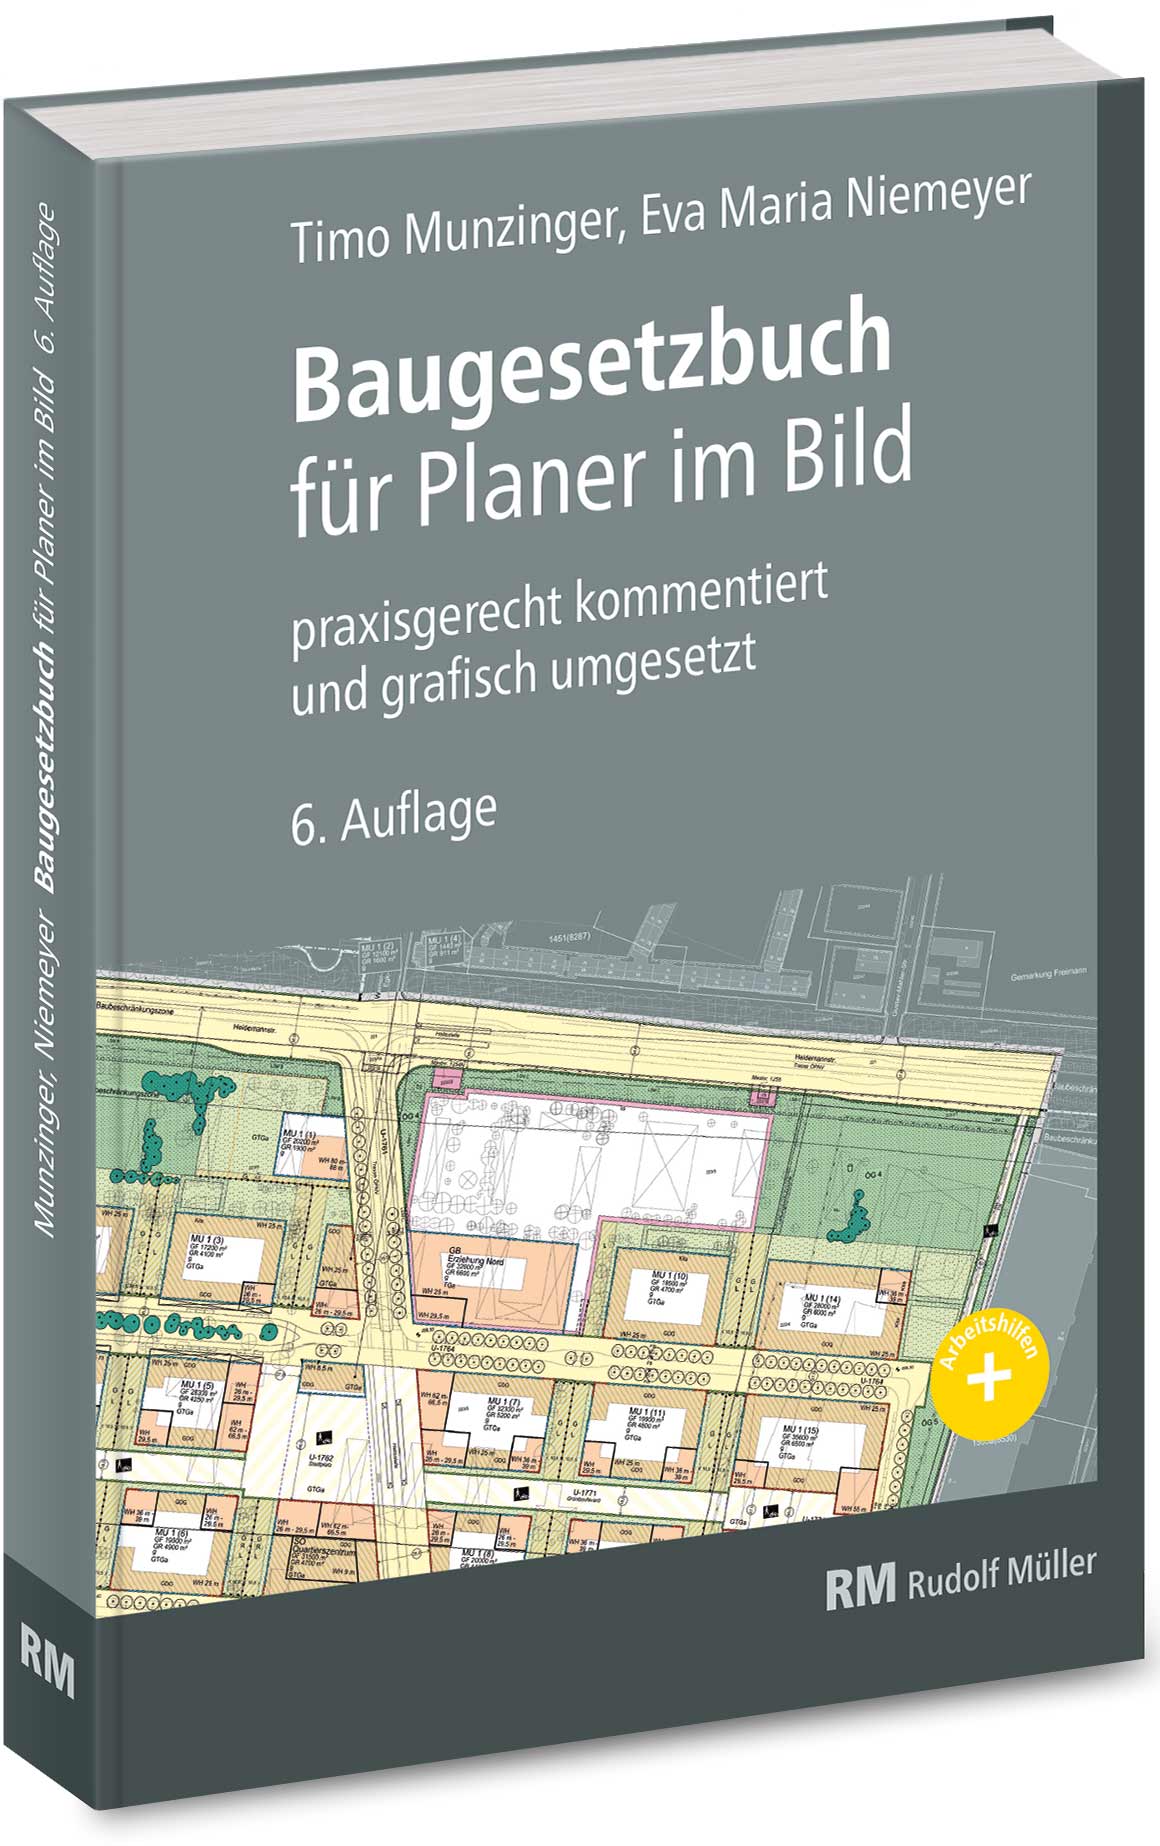 Baugesetzbuch für Planer im Bild“ in sechster Auflage erschienen